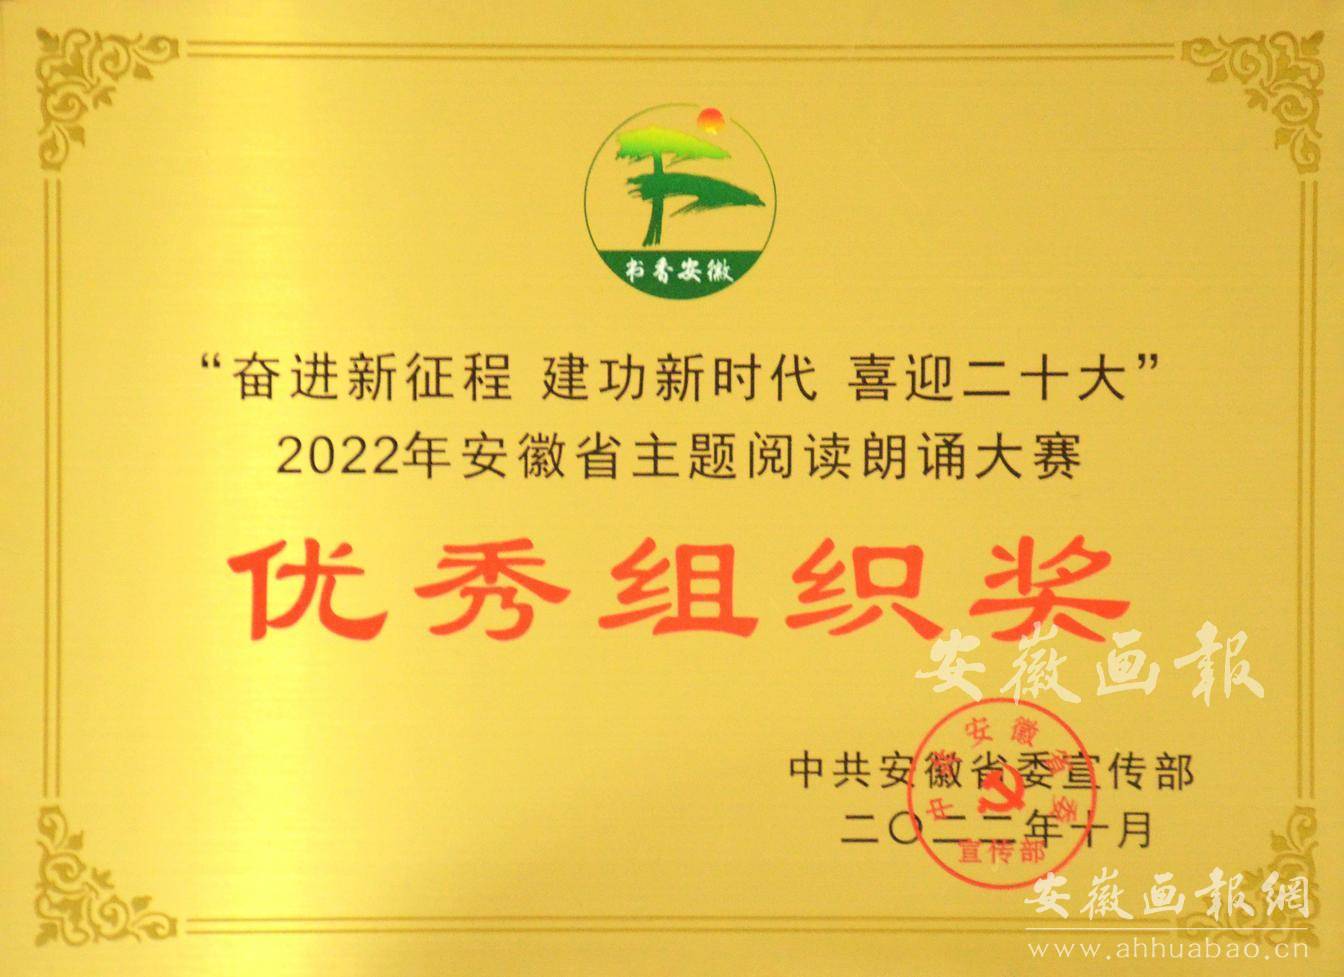 2022年安徽省主题阅读朗诵大赛优秀组织奖